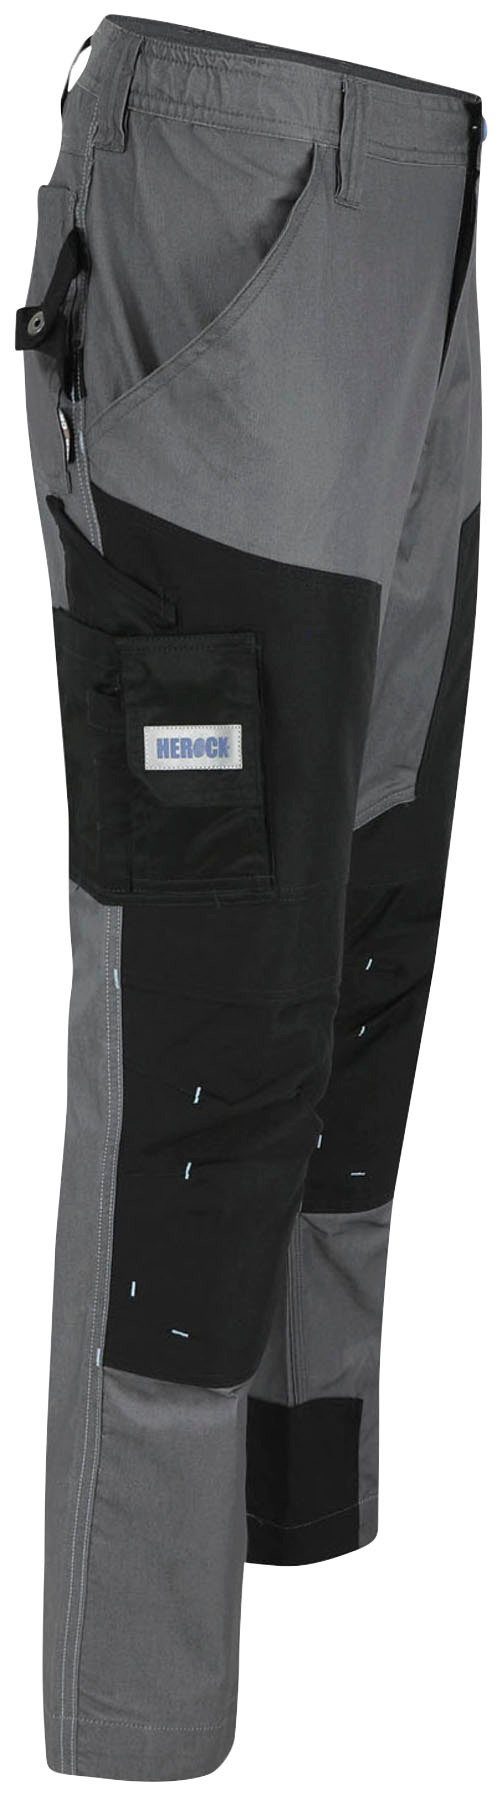 Viele Coolmax® Taschen, Herock Arbeitshose Capua leicht mehrere Farben Stretch, Hose grau mit -Techn.;